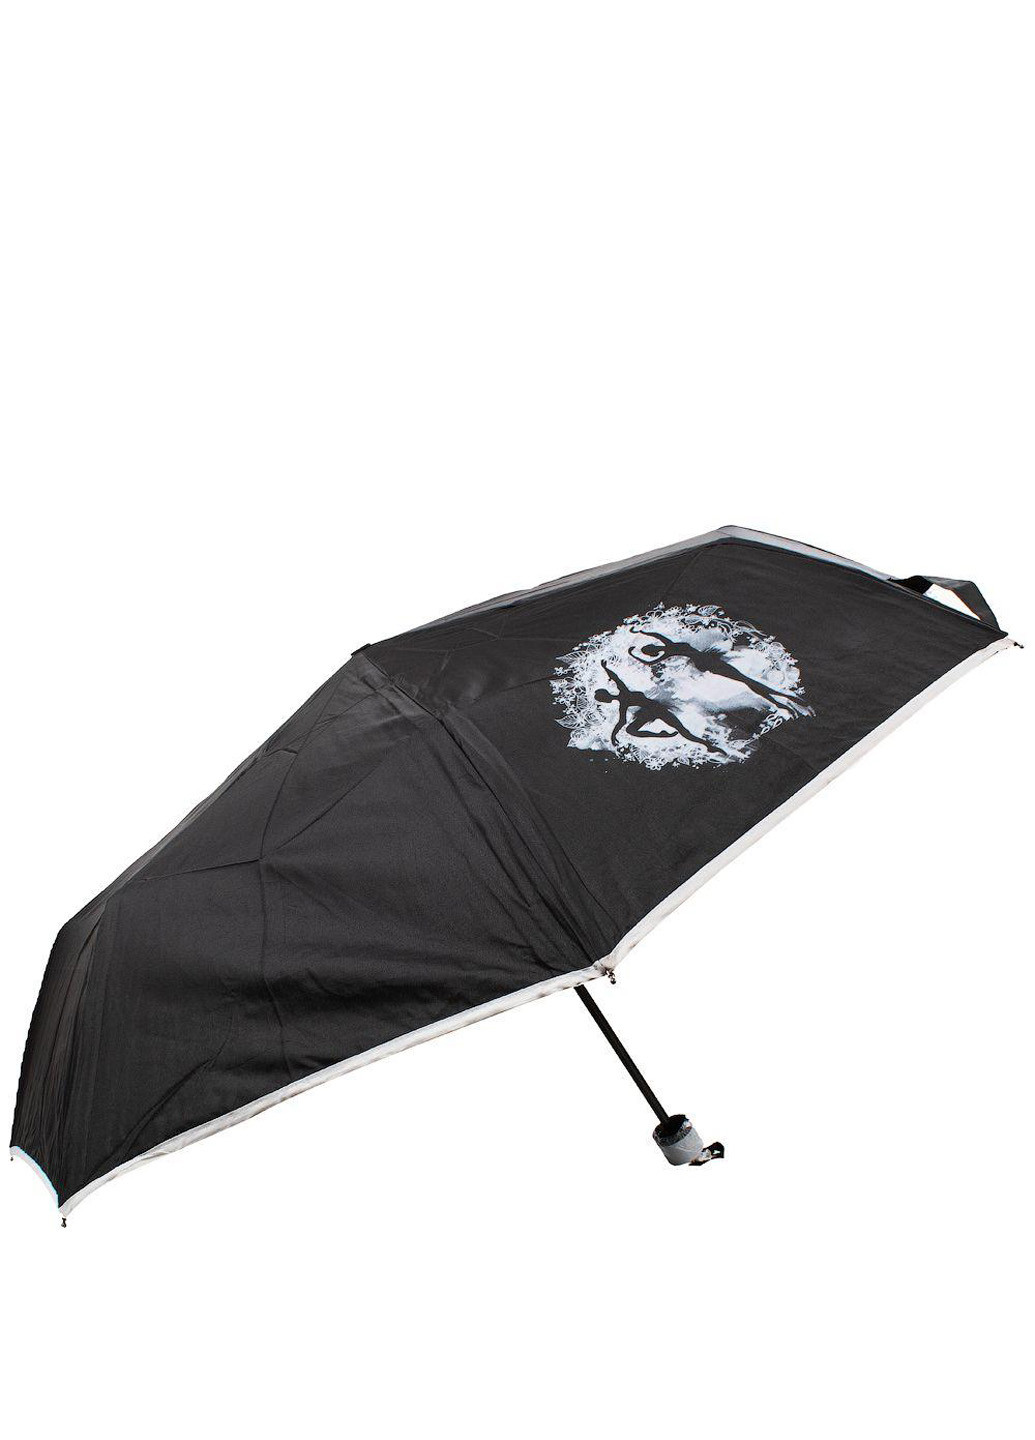 Женский складной зонт механический 98 см Art rain складной однотонный чёрный